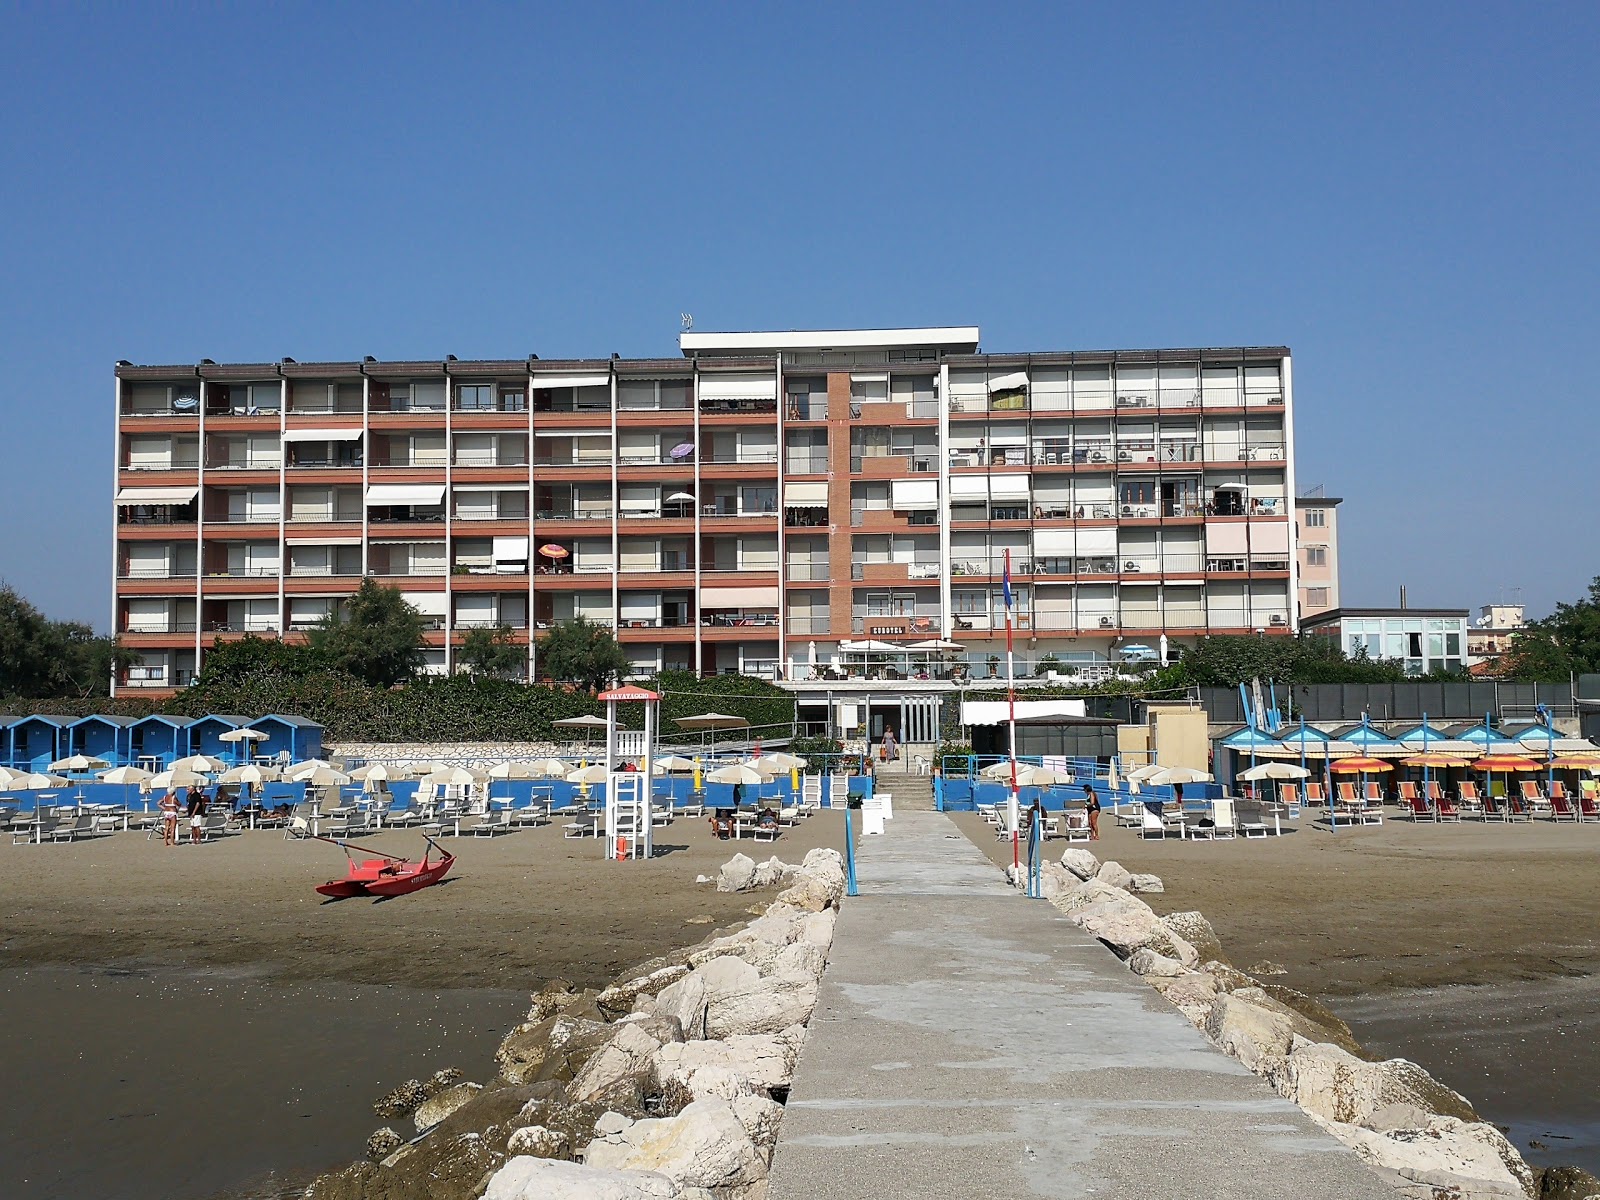 Foto de Murazzi Spiaggia Libera - recomendado para viajeros en familia con niños